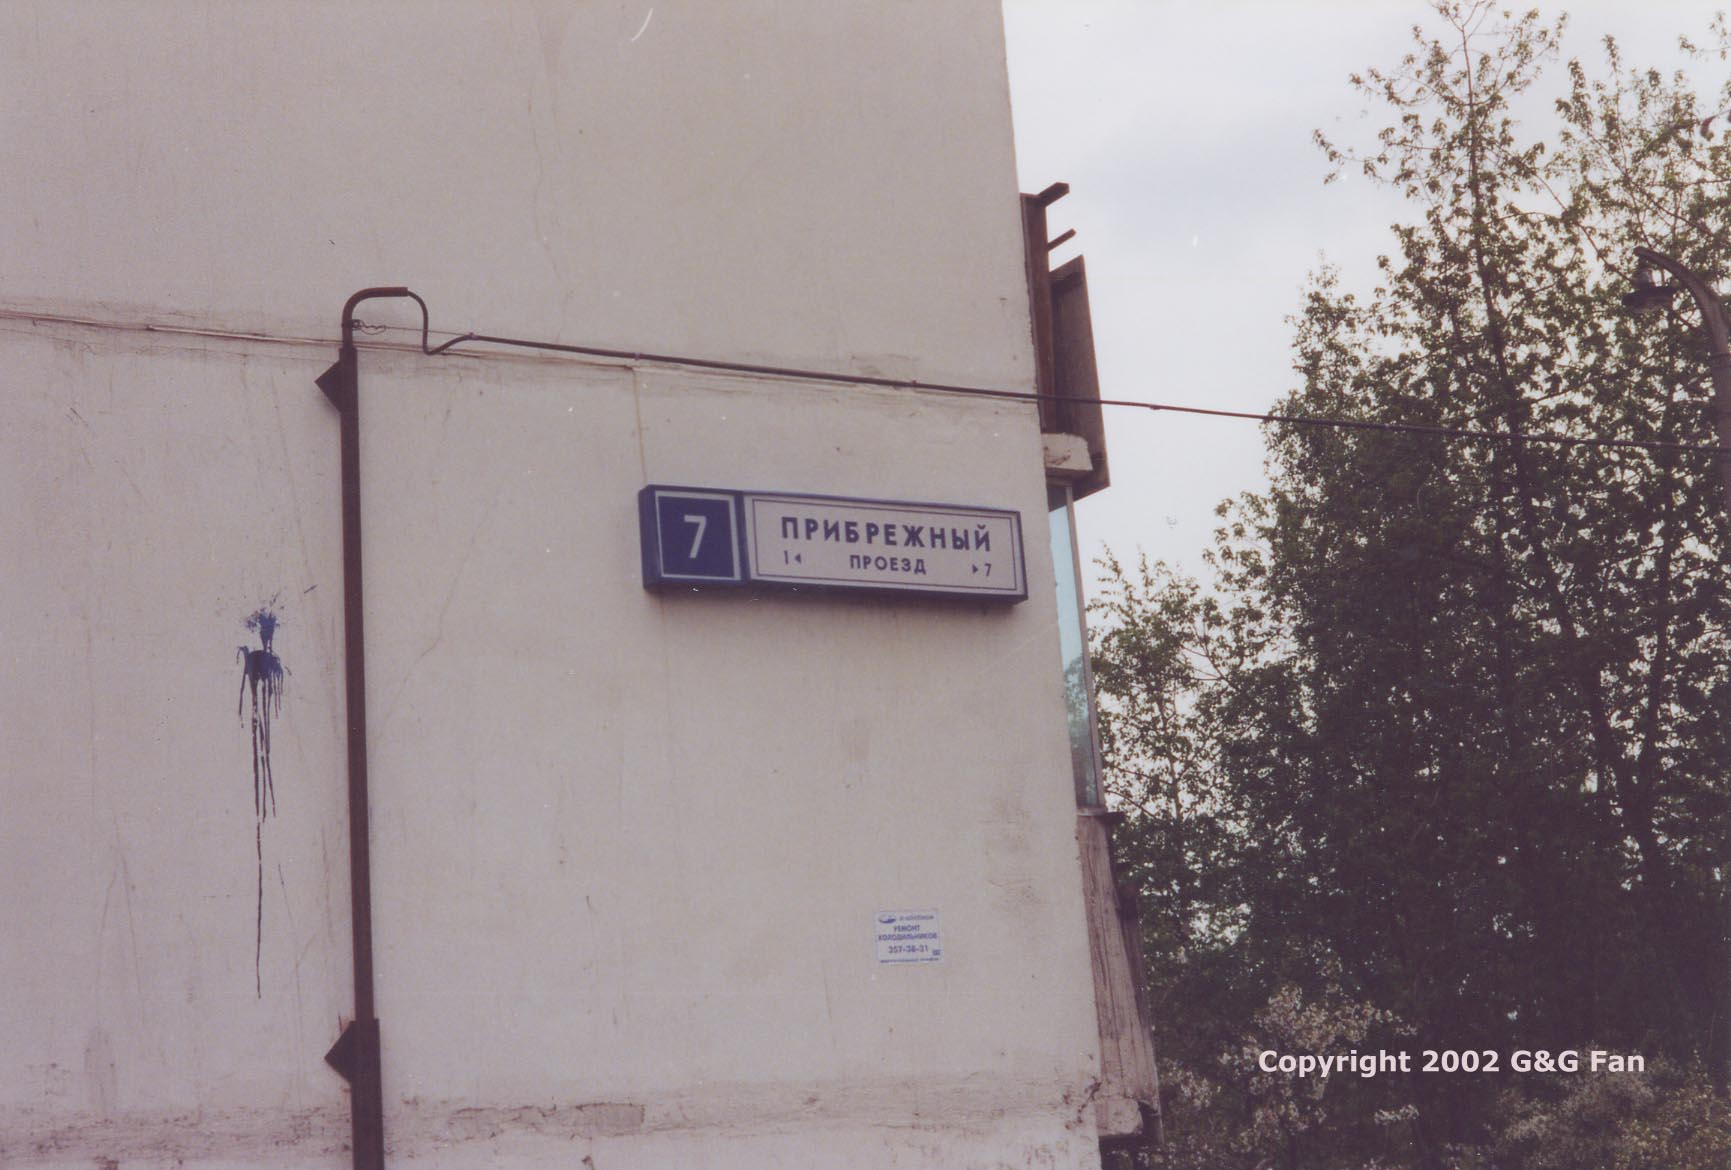 Sign "7 Pribrezhny Proezd"